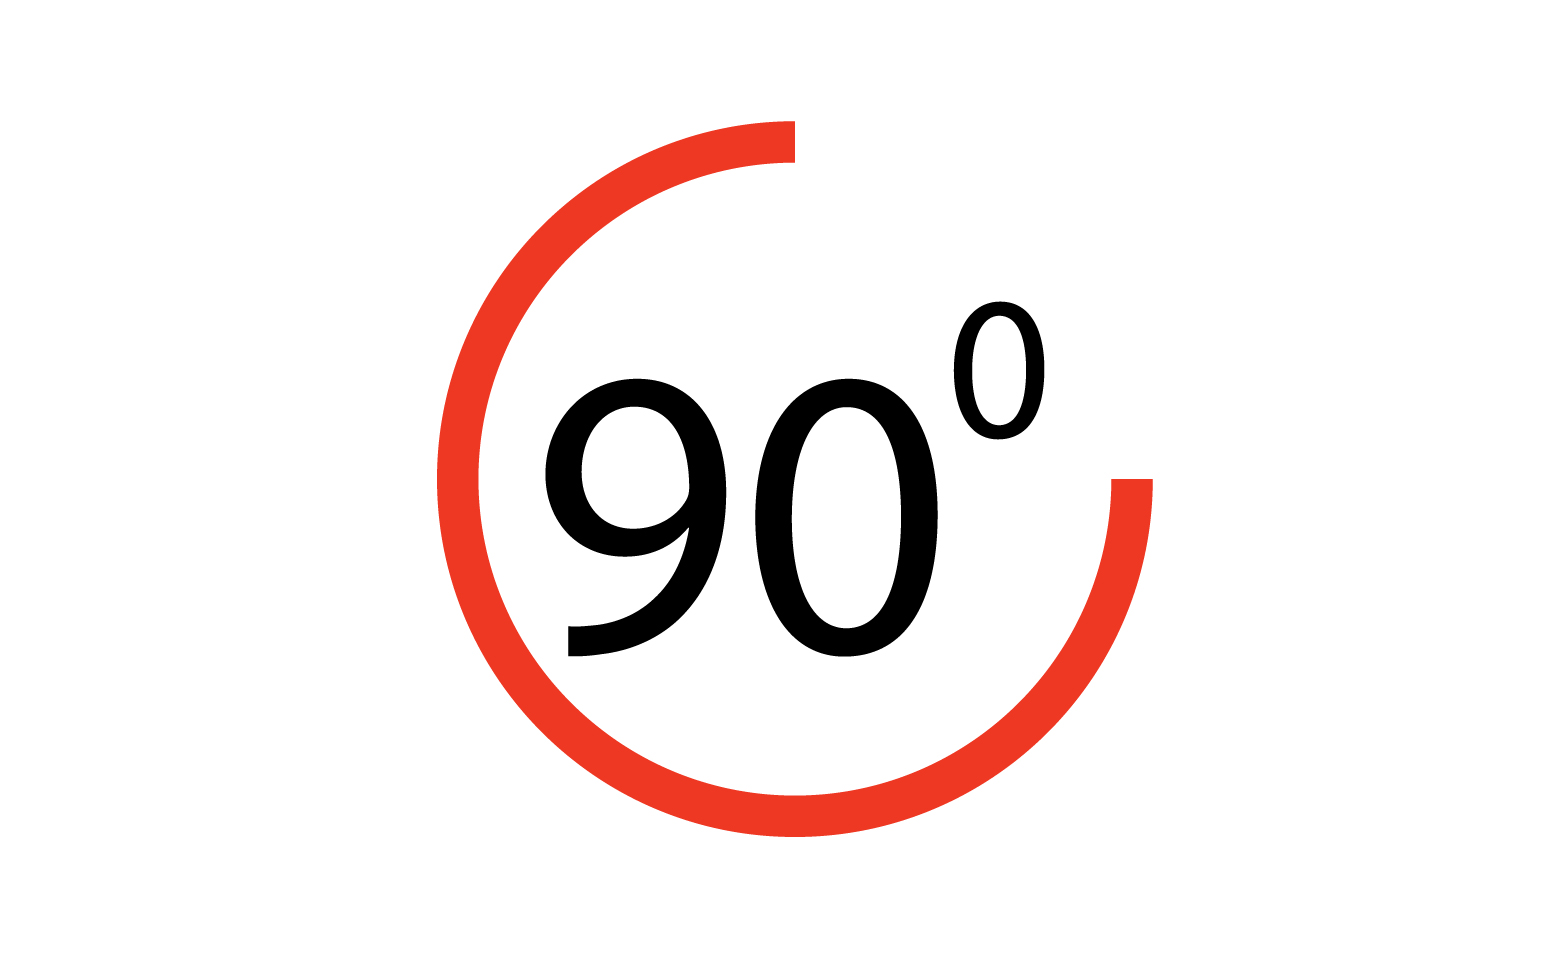 90 degree angle rotation icon symbol logo v40